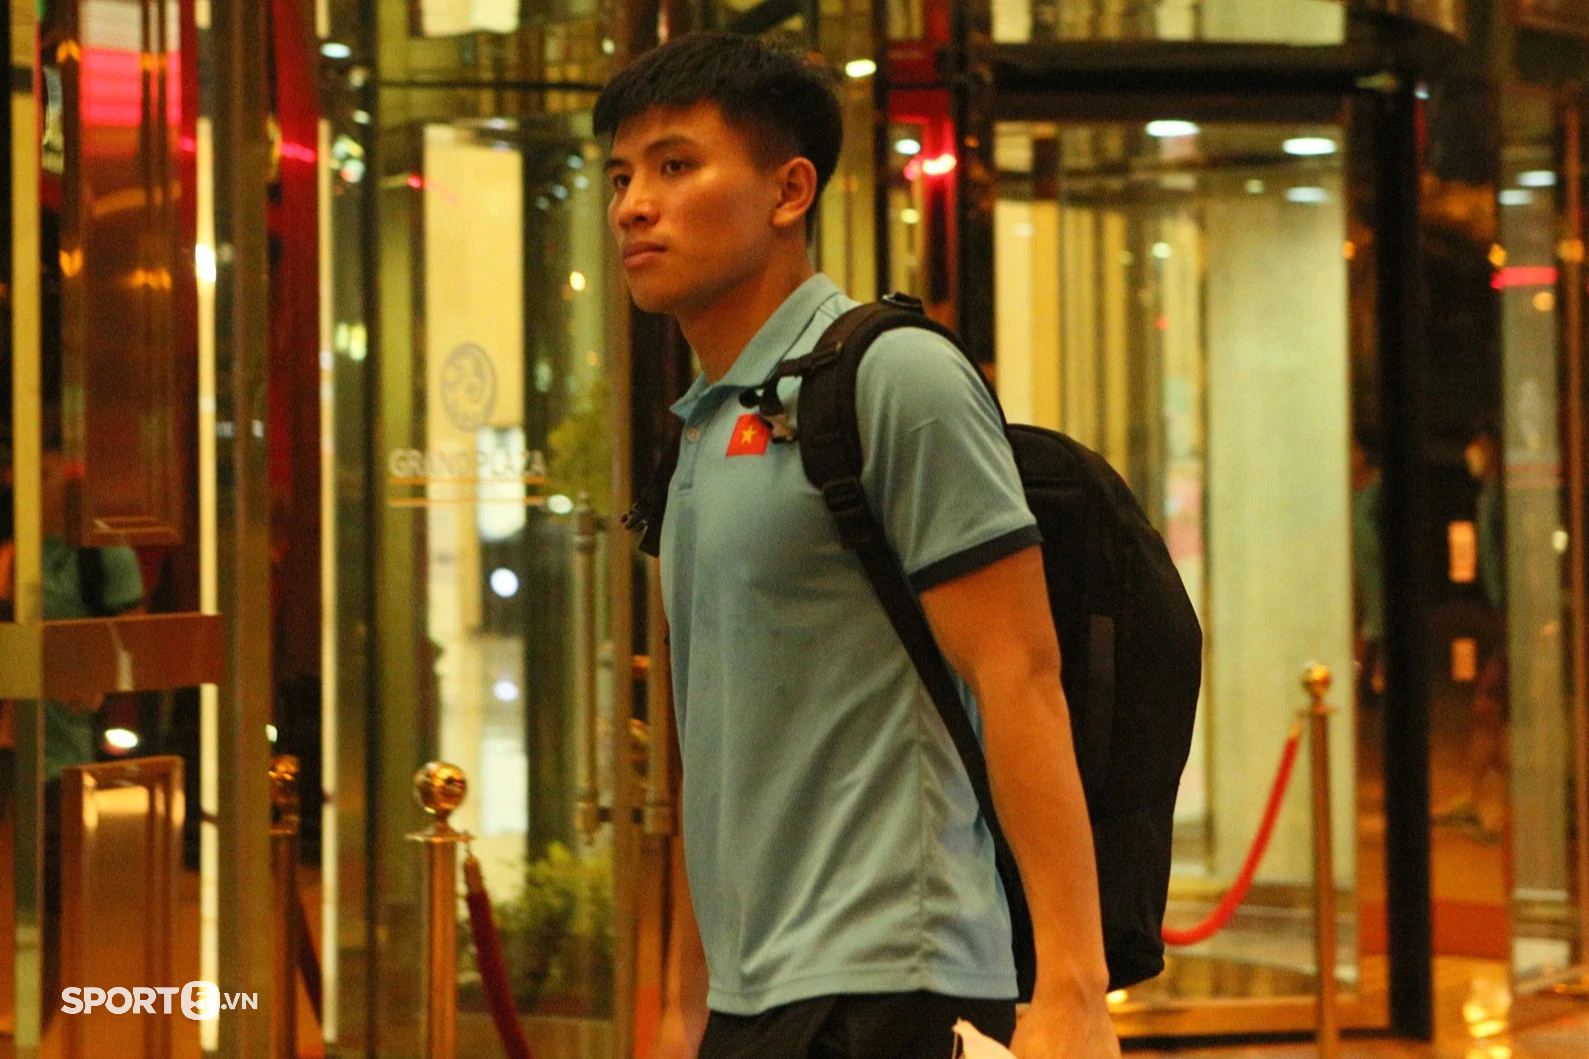 U23 Việt Nam trở về khách sạn với dáng vẻ mệt mỏi sau buổi tập luyện ngày 25/4 - Ảnh 9.